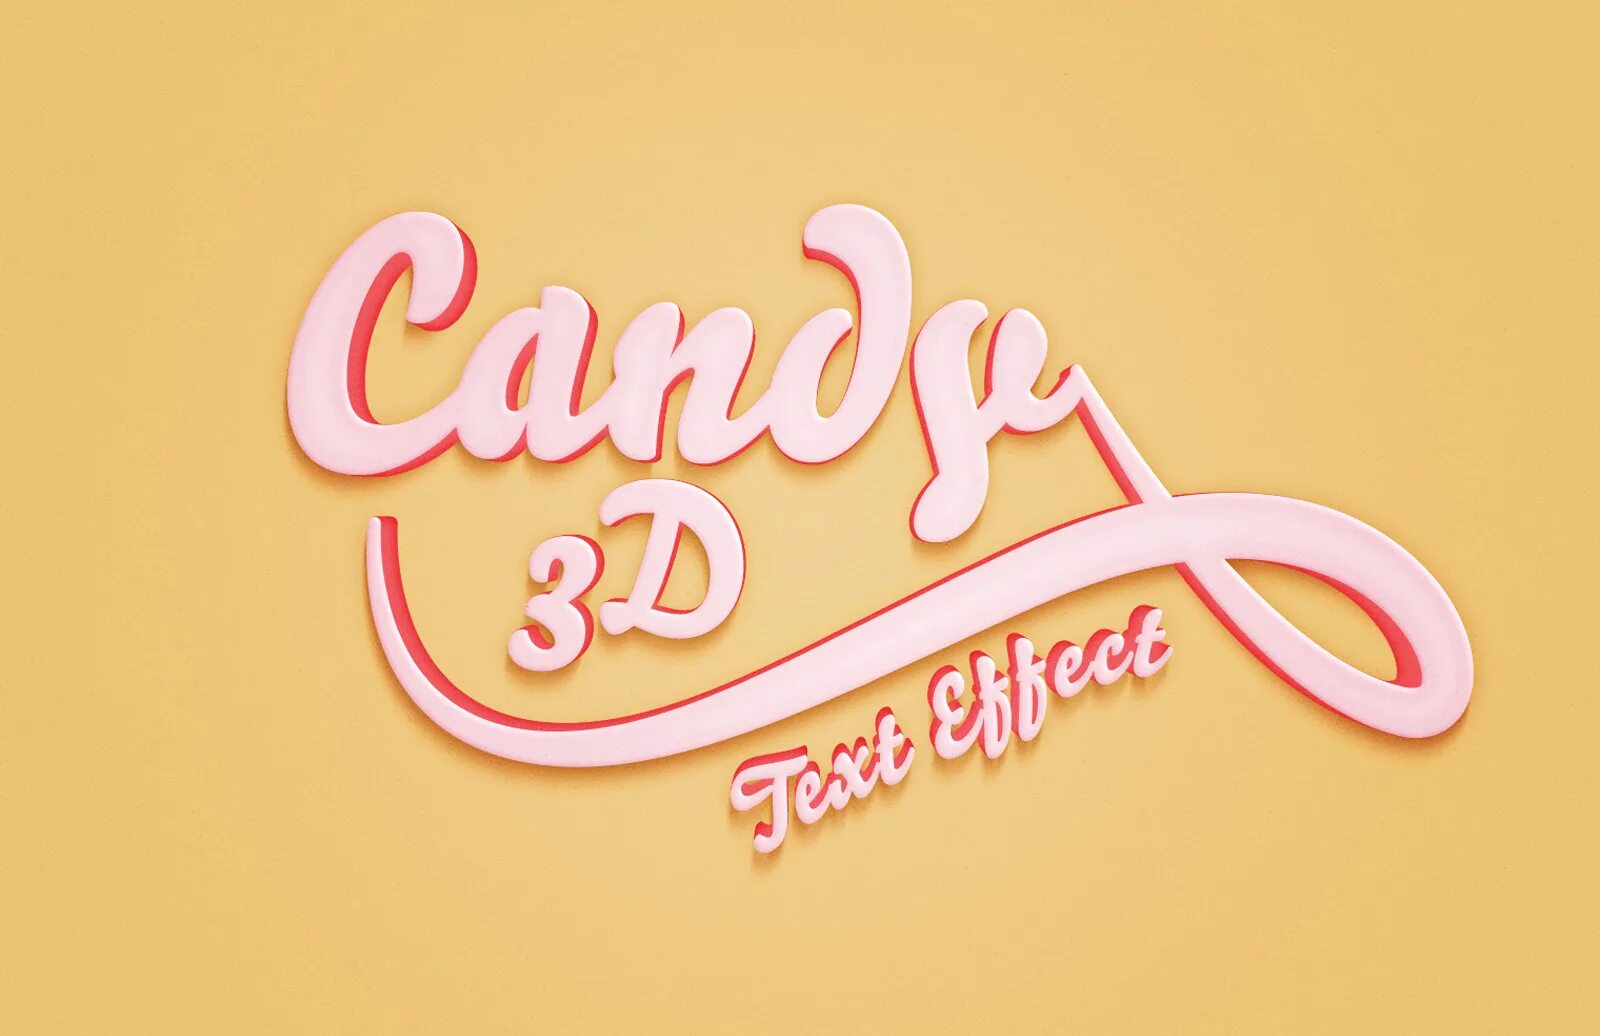 Sweet text. Карамельный стиль текста. Красивая надпись Candy. Стиль для фотошопа карамель. Candy text Effect PSD.